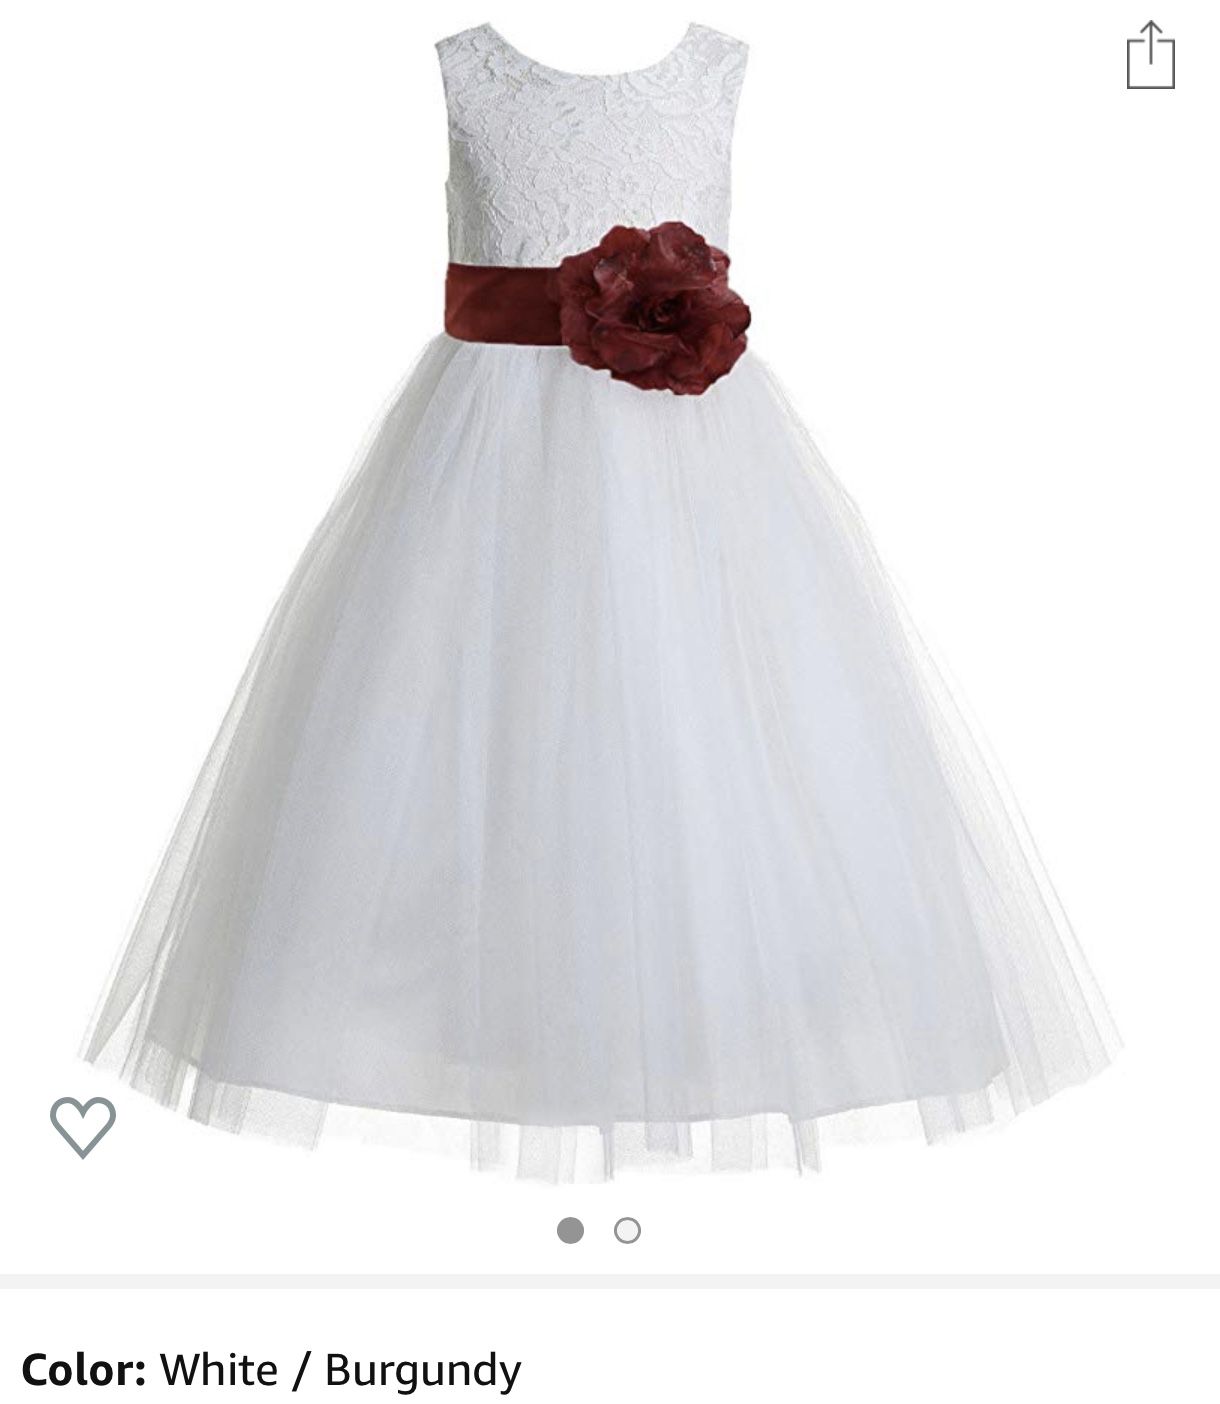 White Flower Girl Dress (w/Burgundy Flower & Bow) - Size 4T/5T